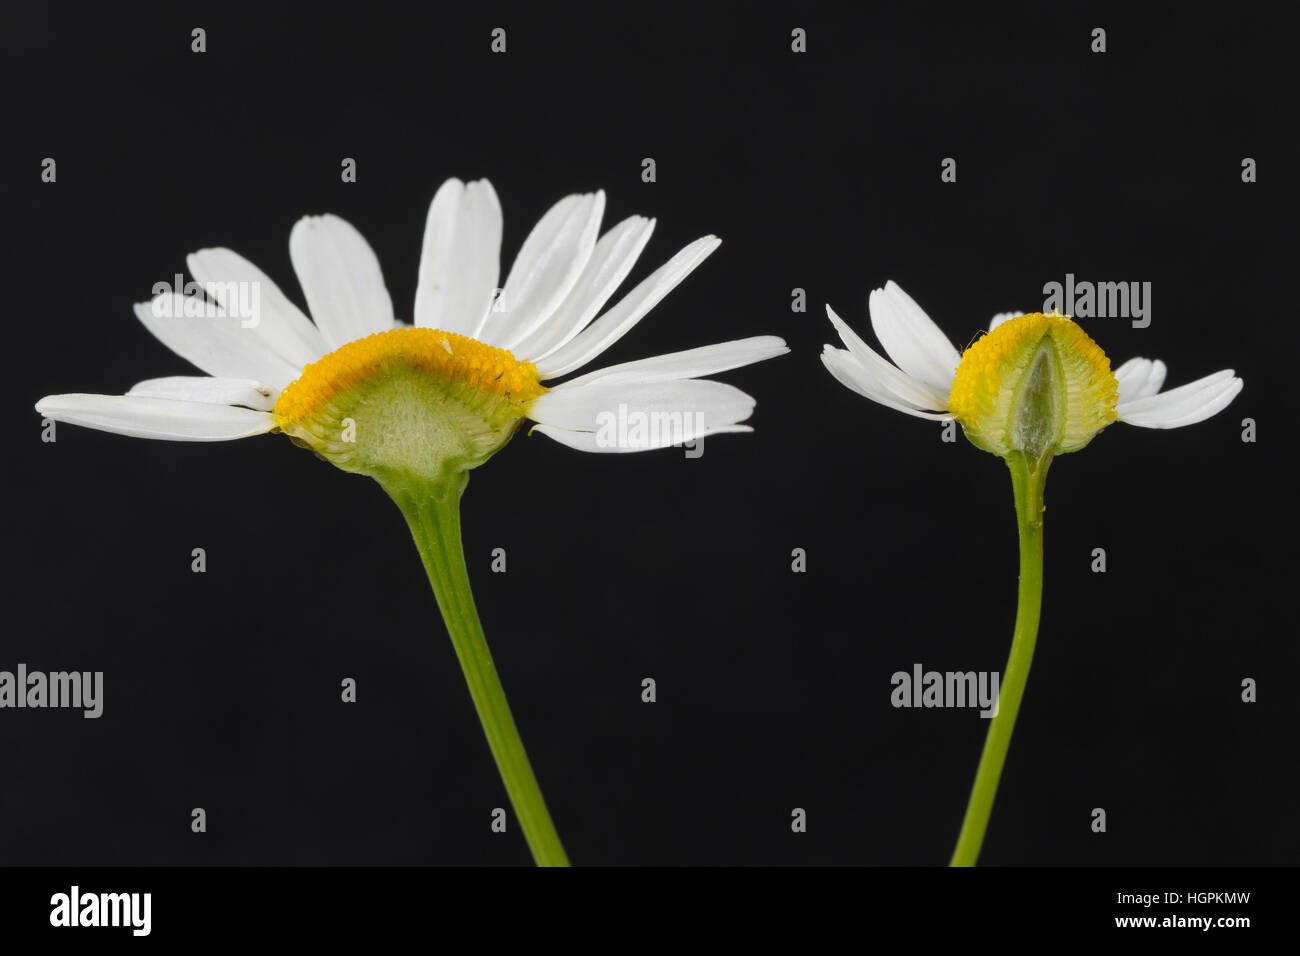 Vergleich zwischen Echter Kamille (rechts im hohlem Blütenboden mit und Längsschnitt) Unechter Kamille (gefülltem Blütenboden liens mit). Echte Kamill Banque D'Images